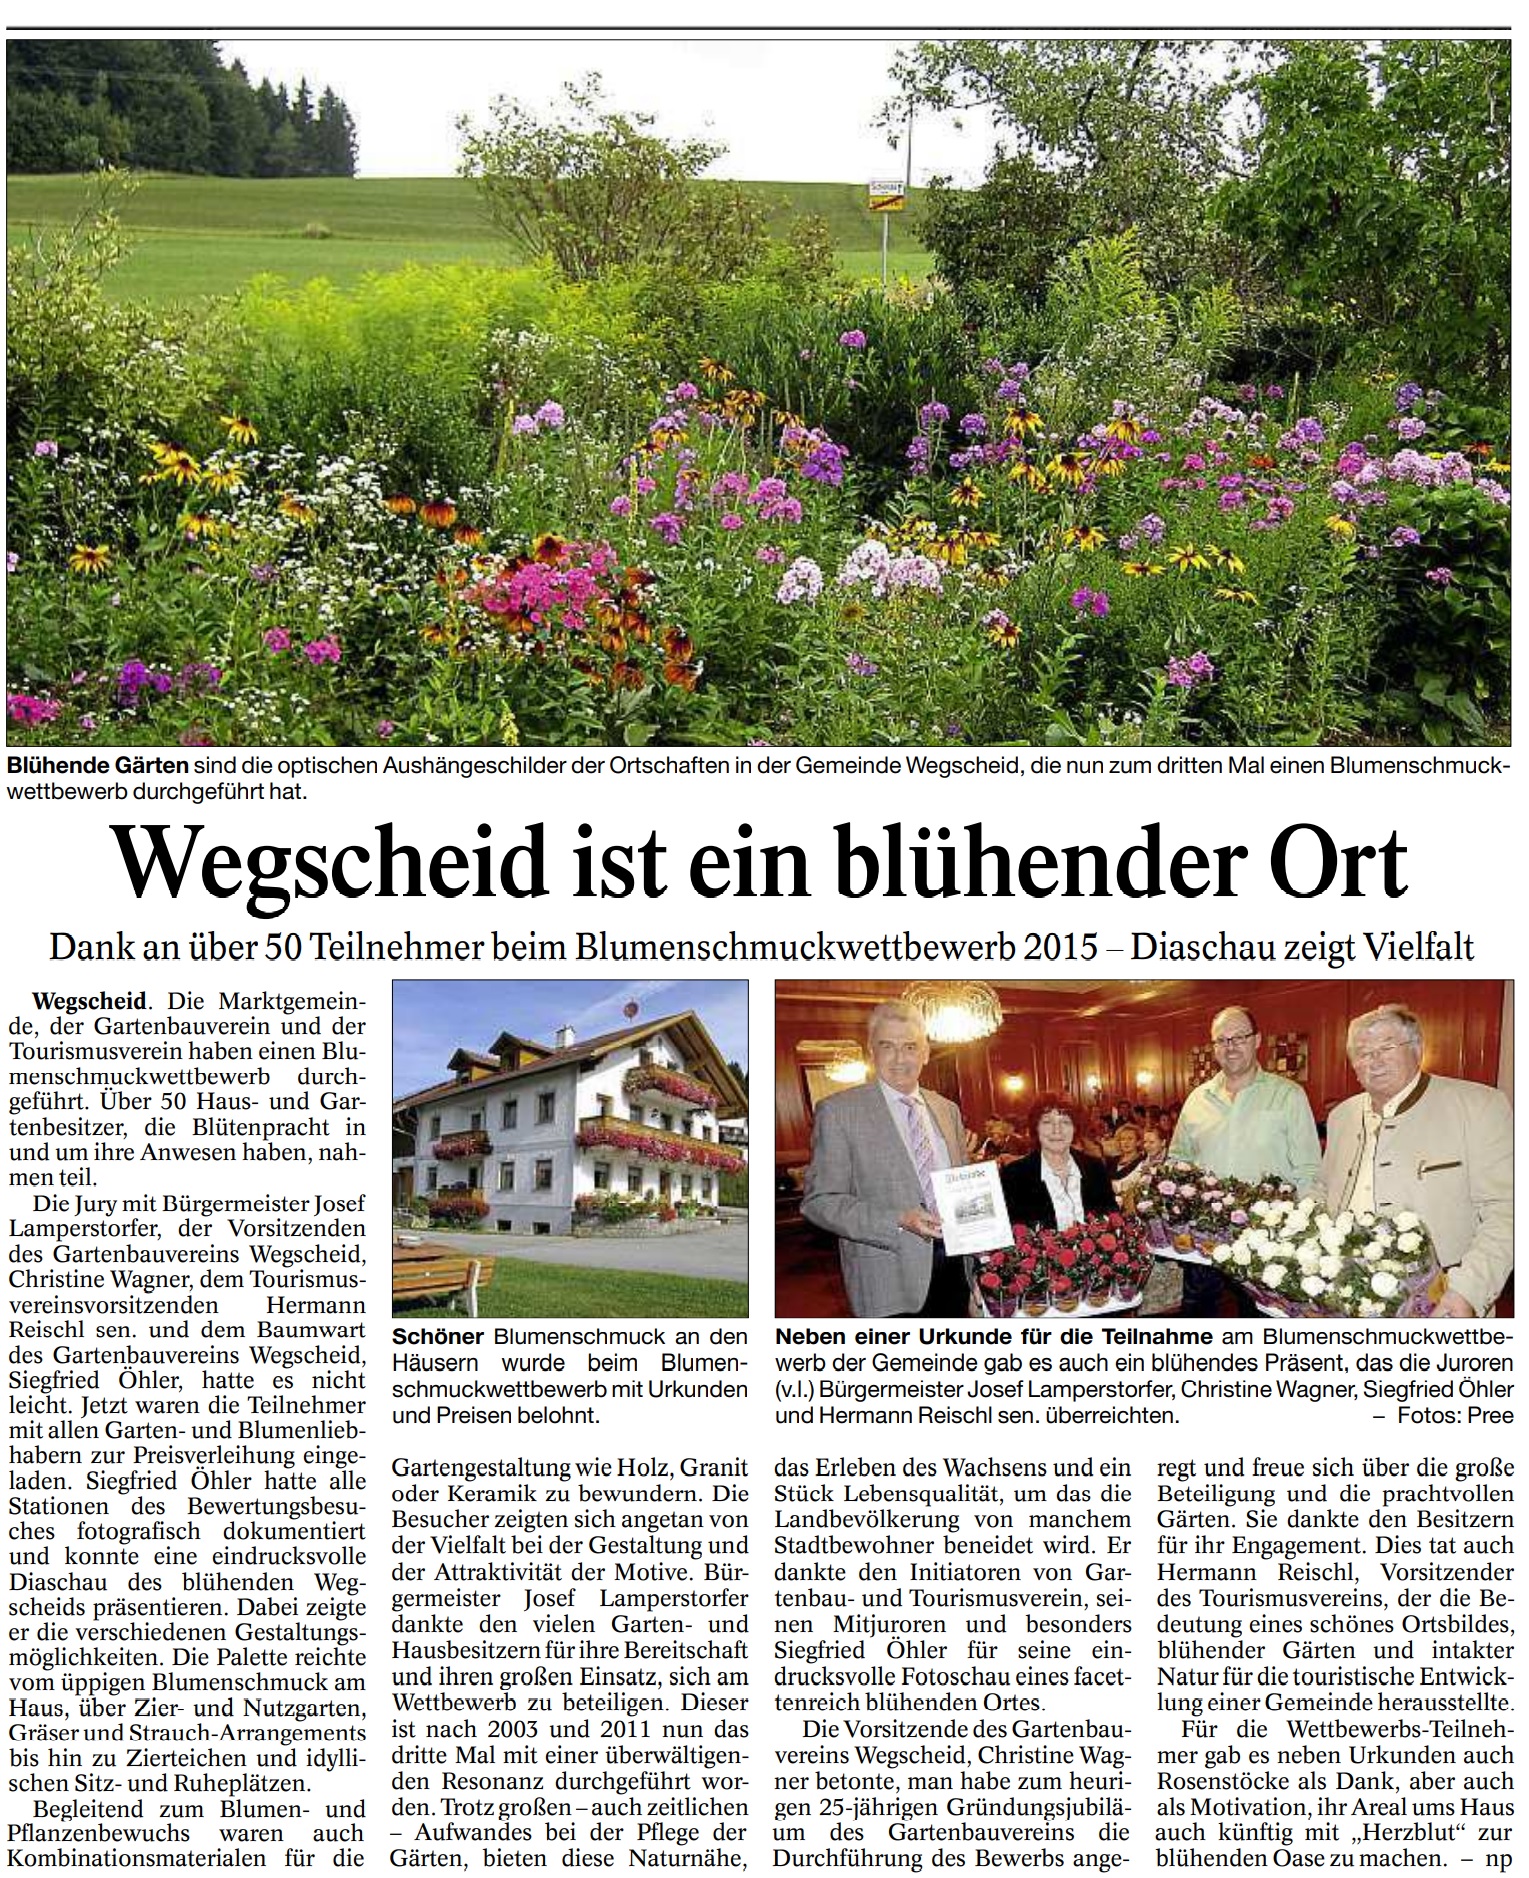 Wegscheid ist ein blühender Ort, Dank an über 50 Teilnehmer beim Blumenschmuckwettbewerb 2015 - Diaschau zeigt Vielfalt, Passauer Neue Presse vom 03.11.2015